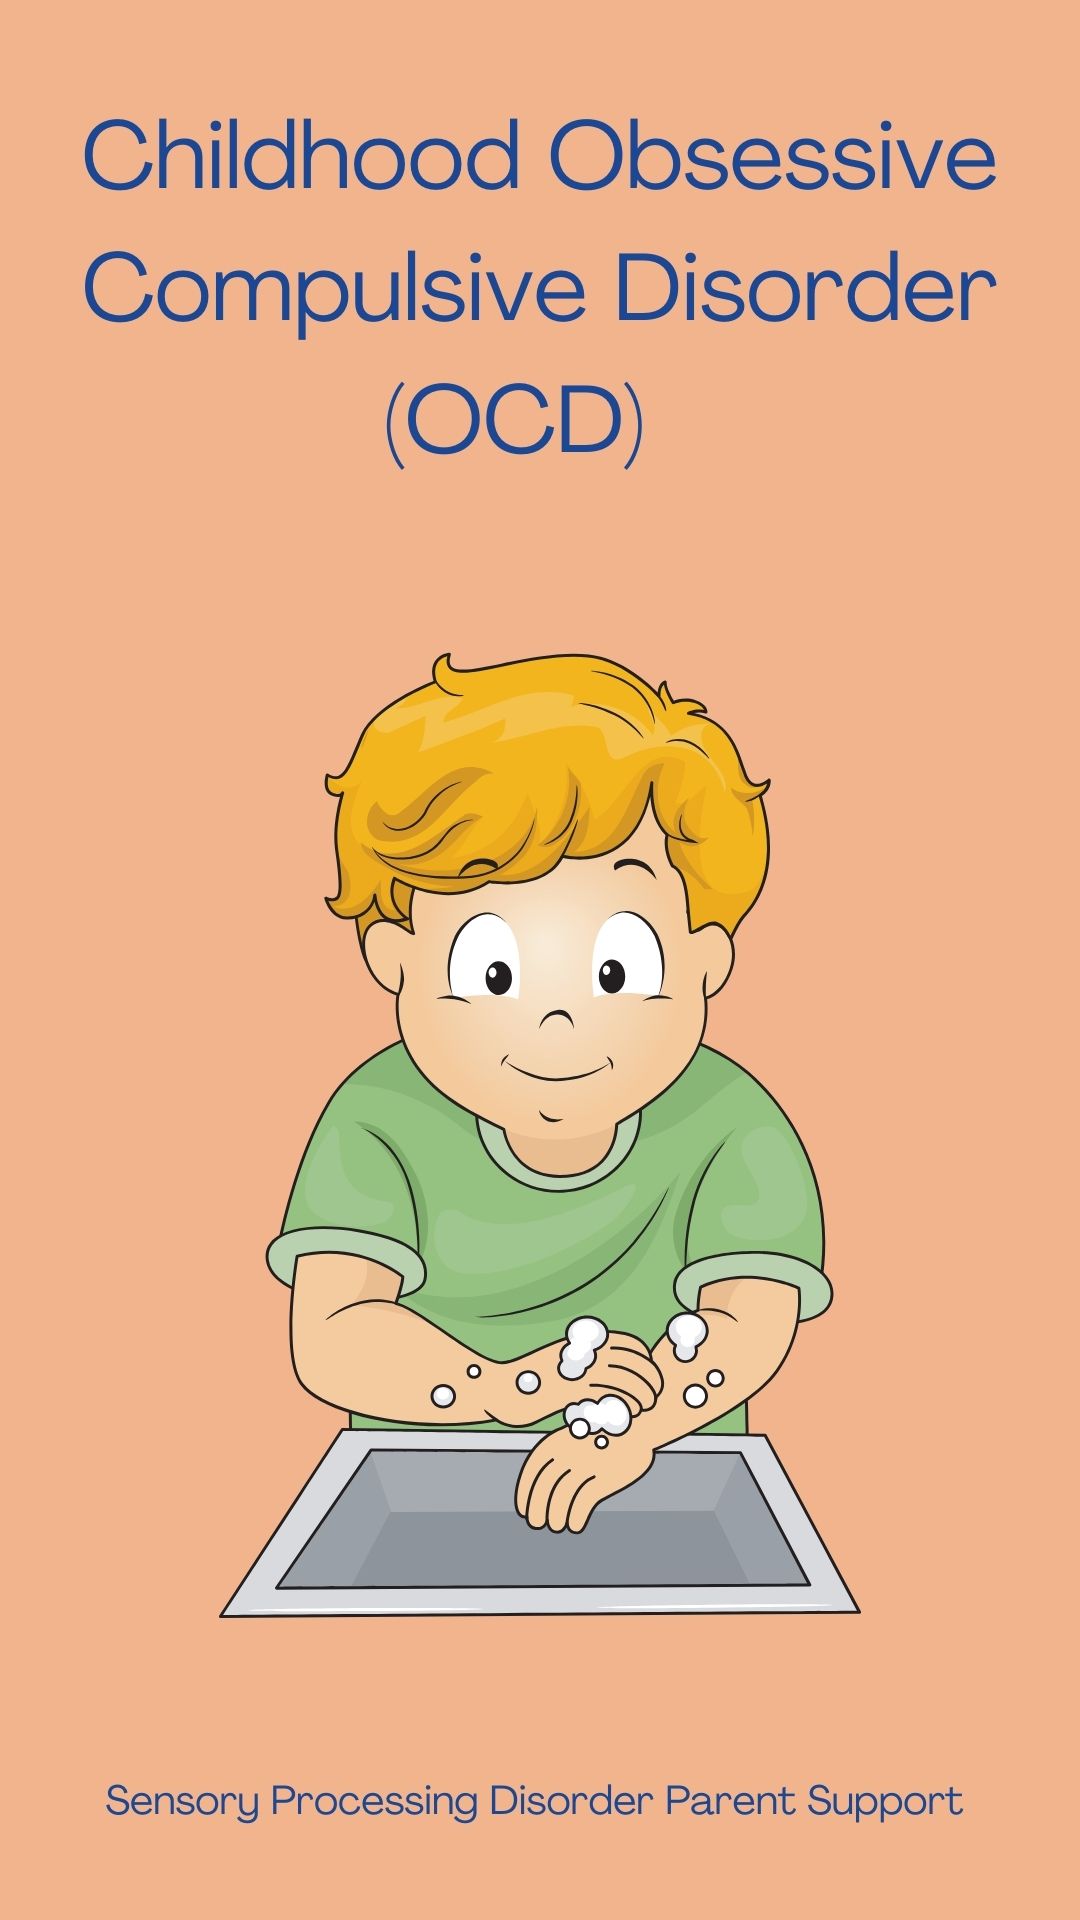 Childhood Obsessive Compulsive Disorder (OCD)